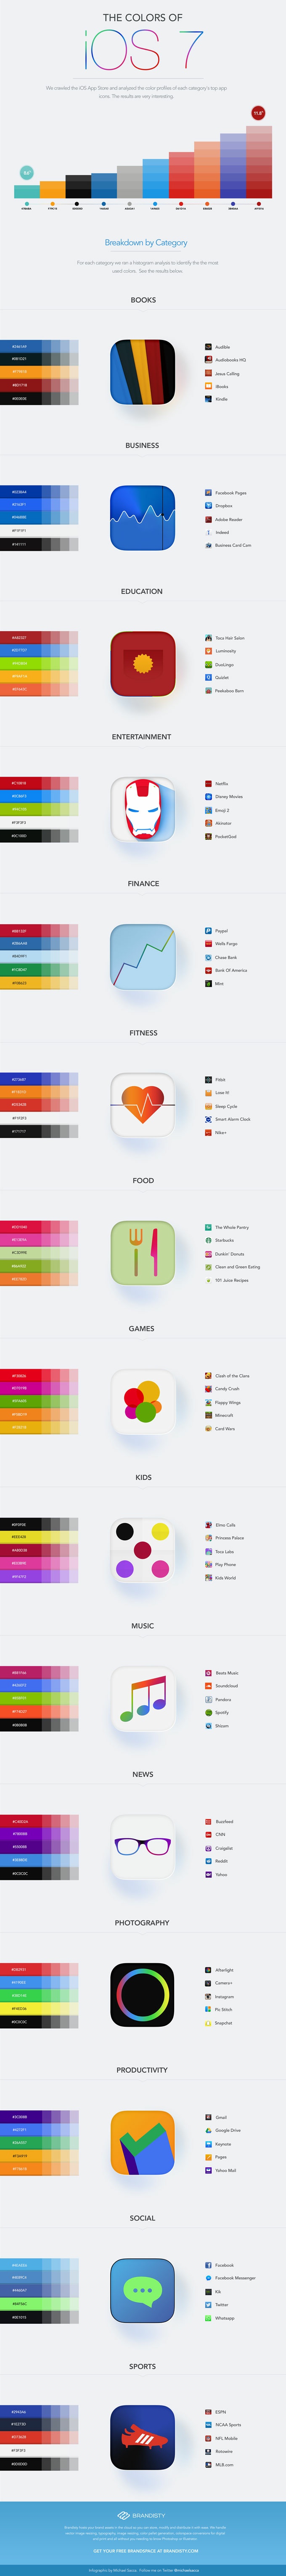 infografia-colores-iconos-ios7